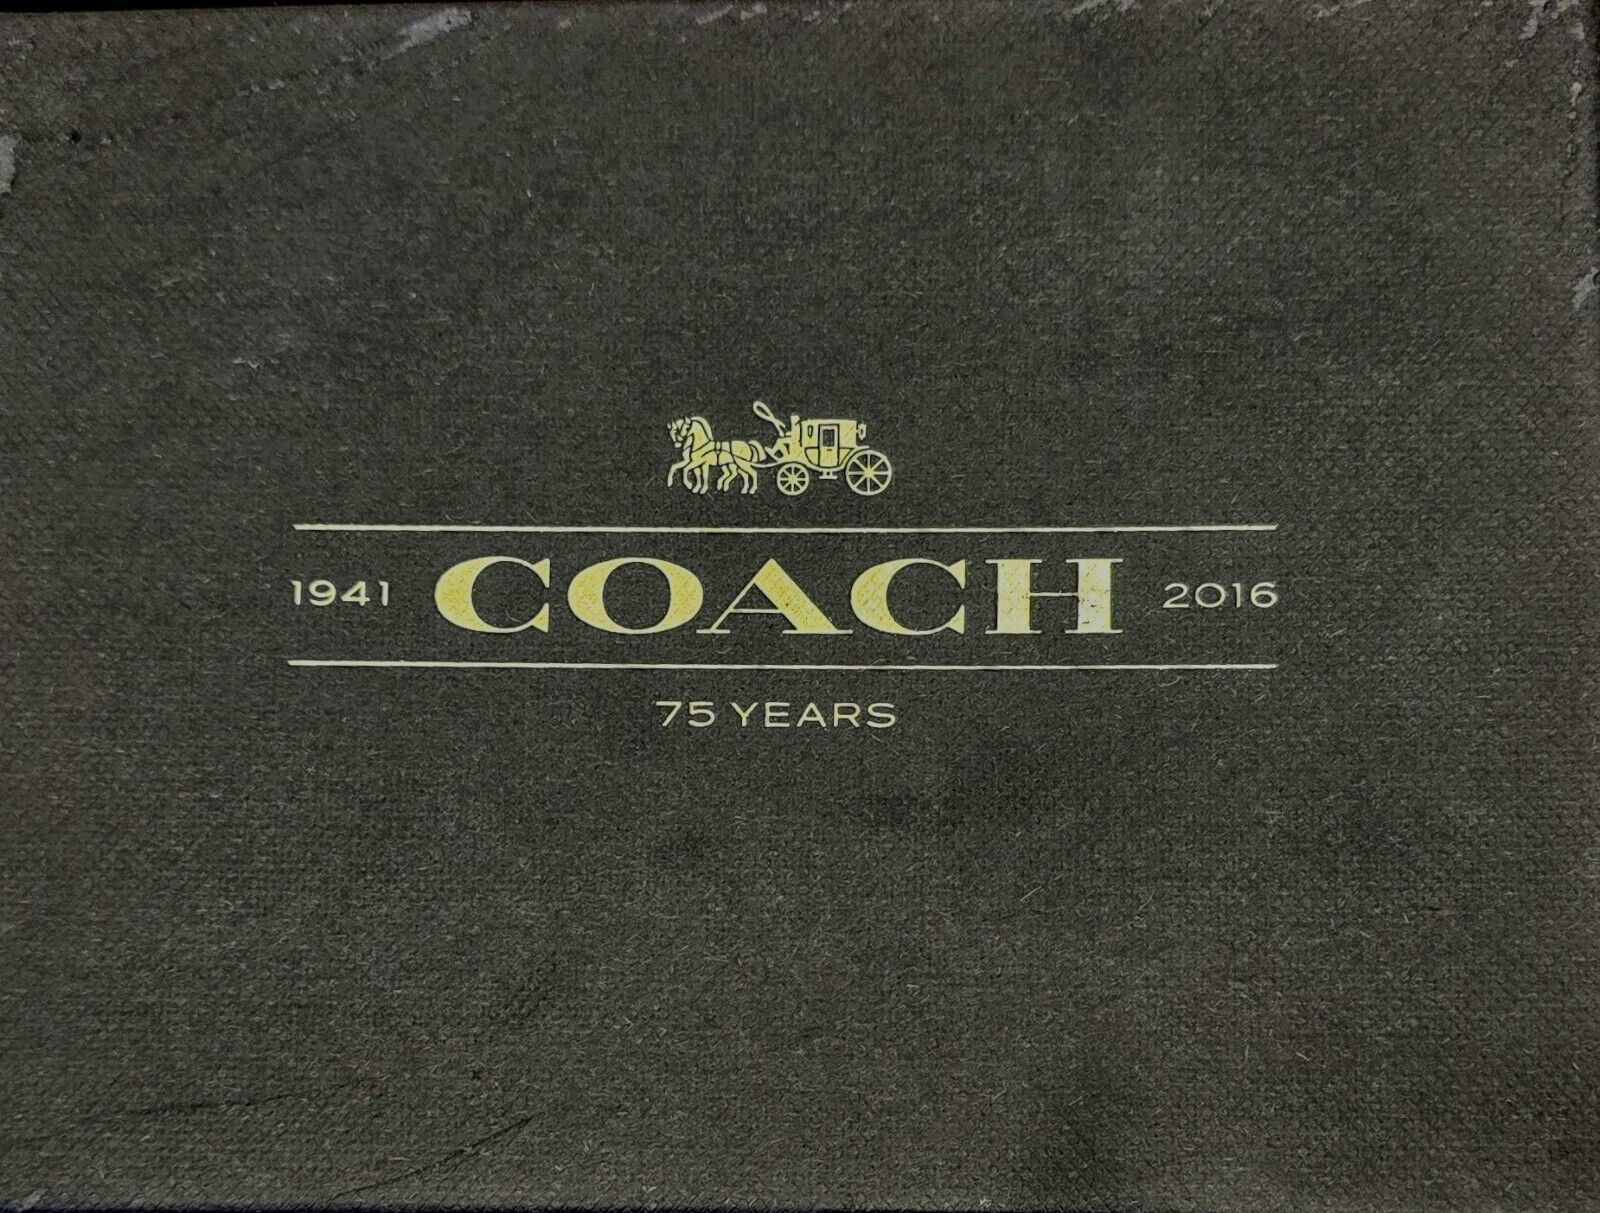 Coach Box - 1941 - 2016 - 75 Years Anniversary Box 